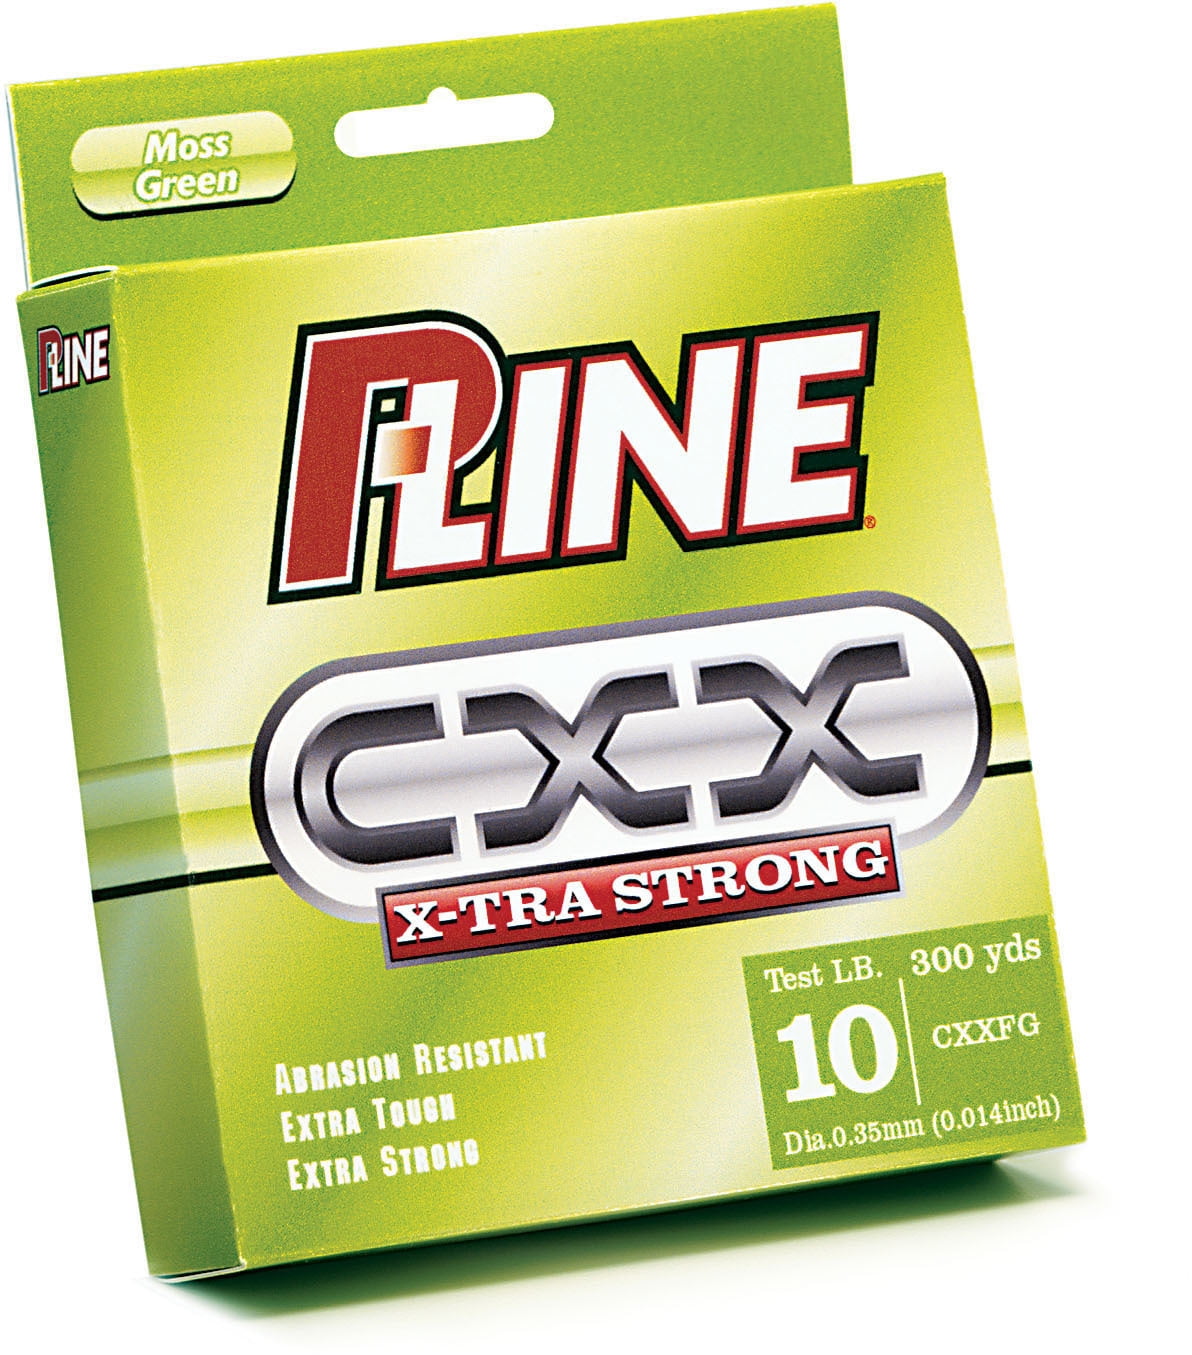 P-Line Cxx-xtra Hi-vis Monofilament Line 300yd 4lb for sale online 